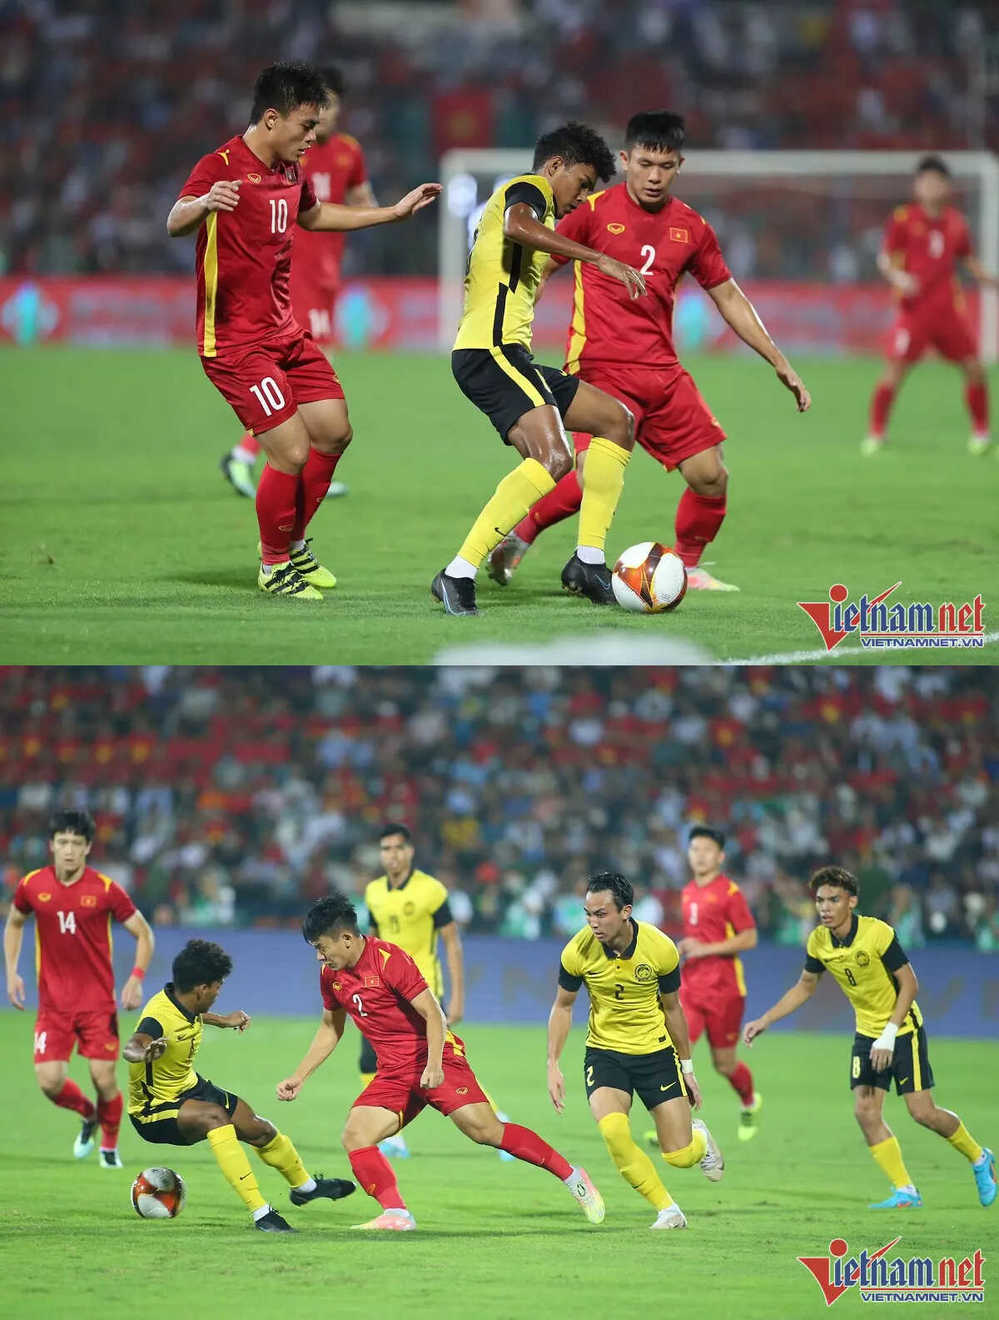  
Các cầu thủ Việt Nam chơi với lối tấn công mong tìm được bàn thắng. (Ảnh: Vietnamnet)